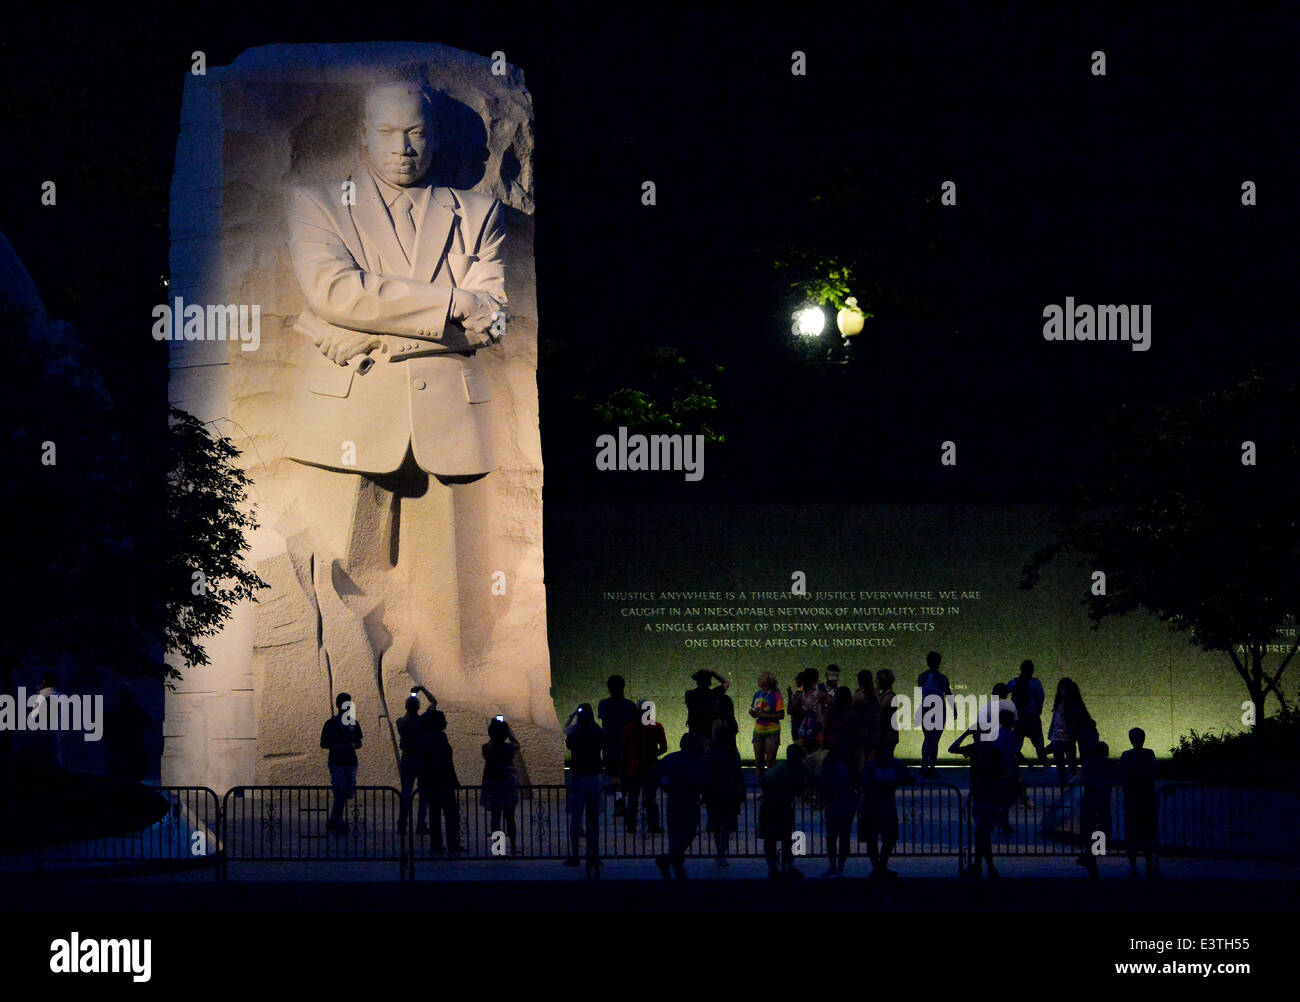 Touristen zu sammeln, in der Nacht, die Martin Luther King Jr. Memorial besuchen 18. Juni 2014 in Washington, D.C. Stockfoto